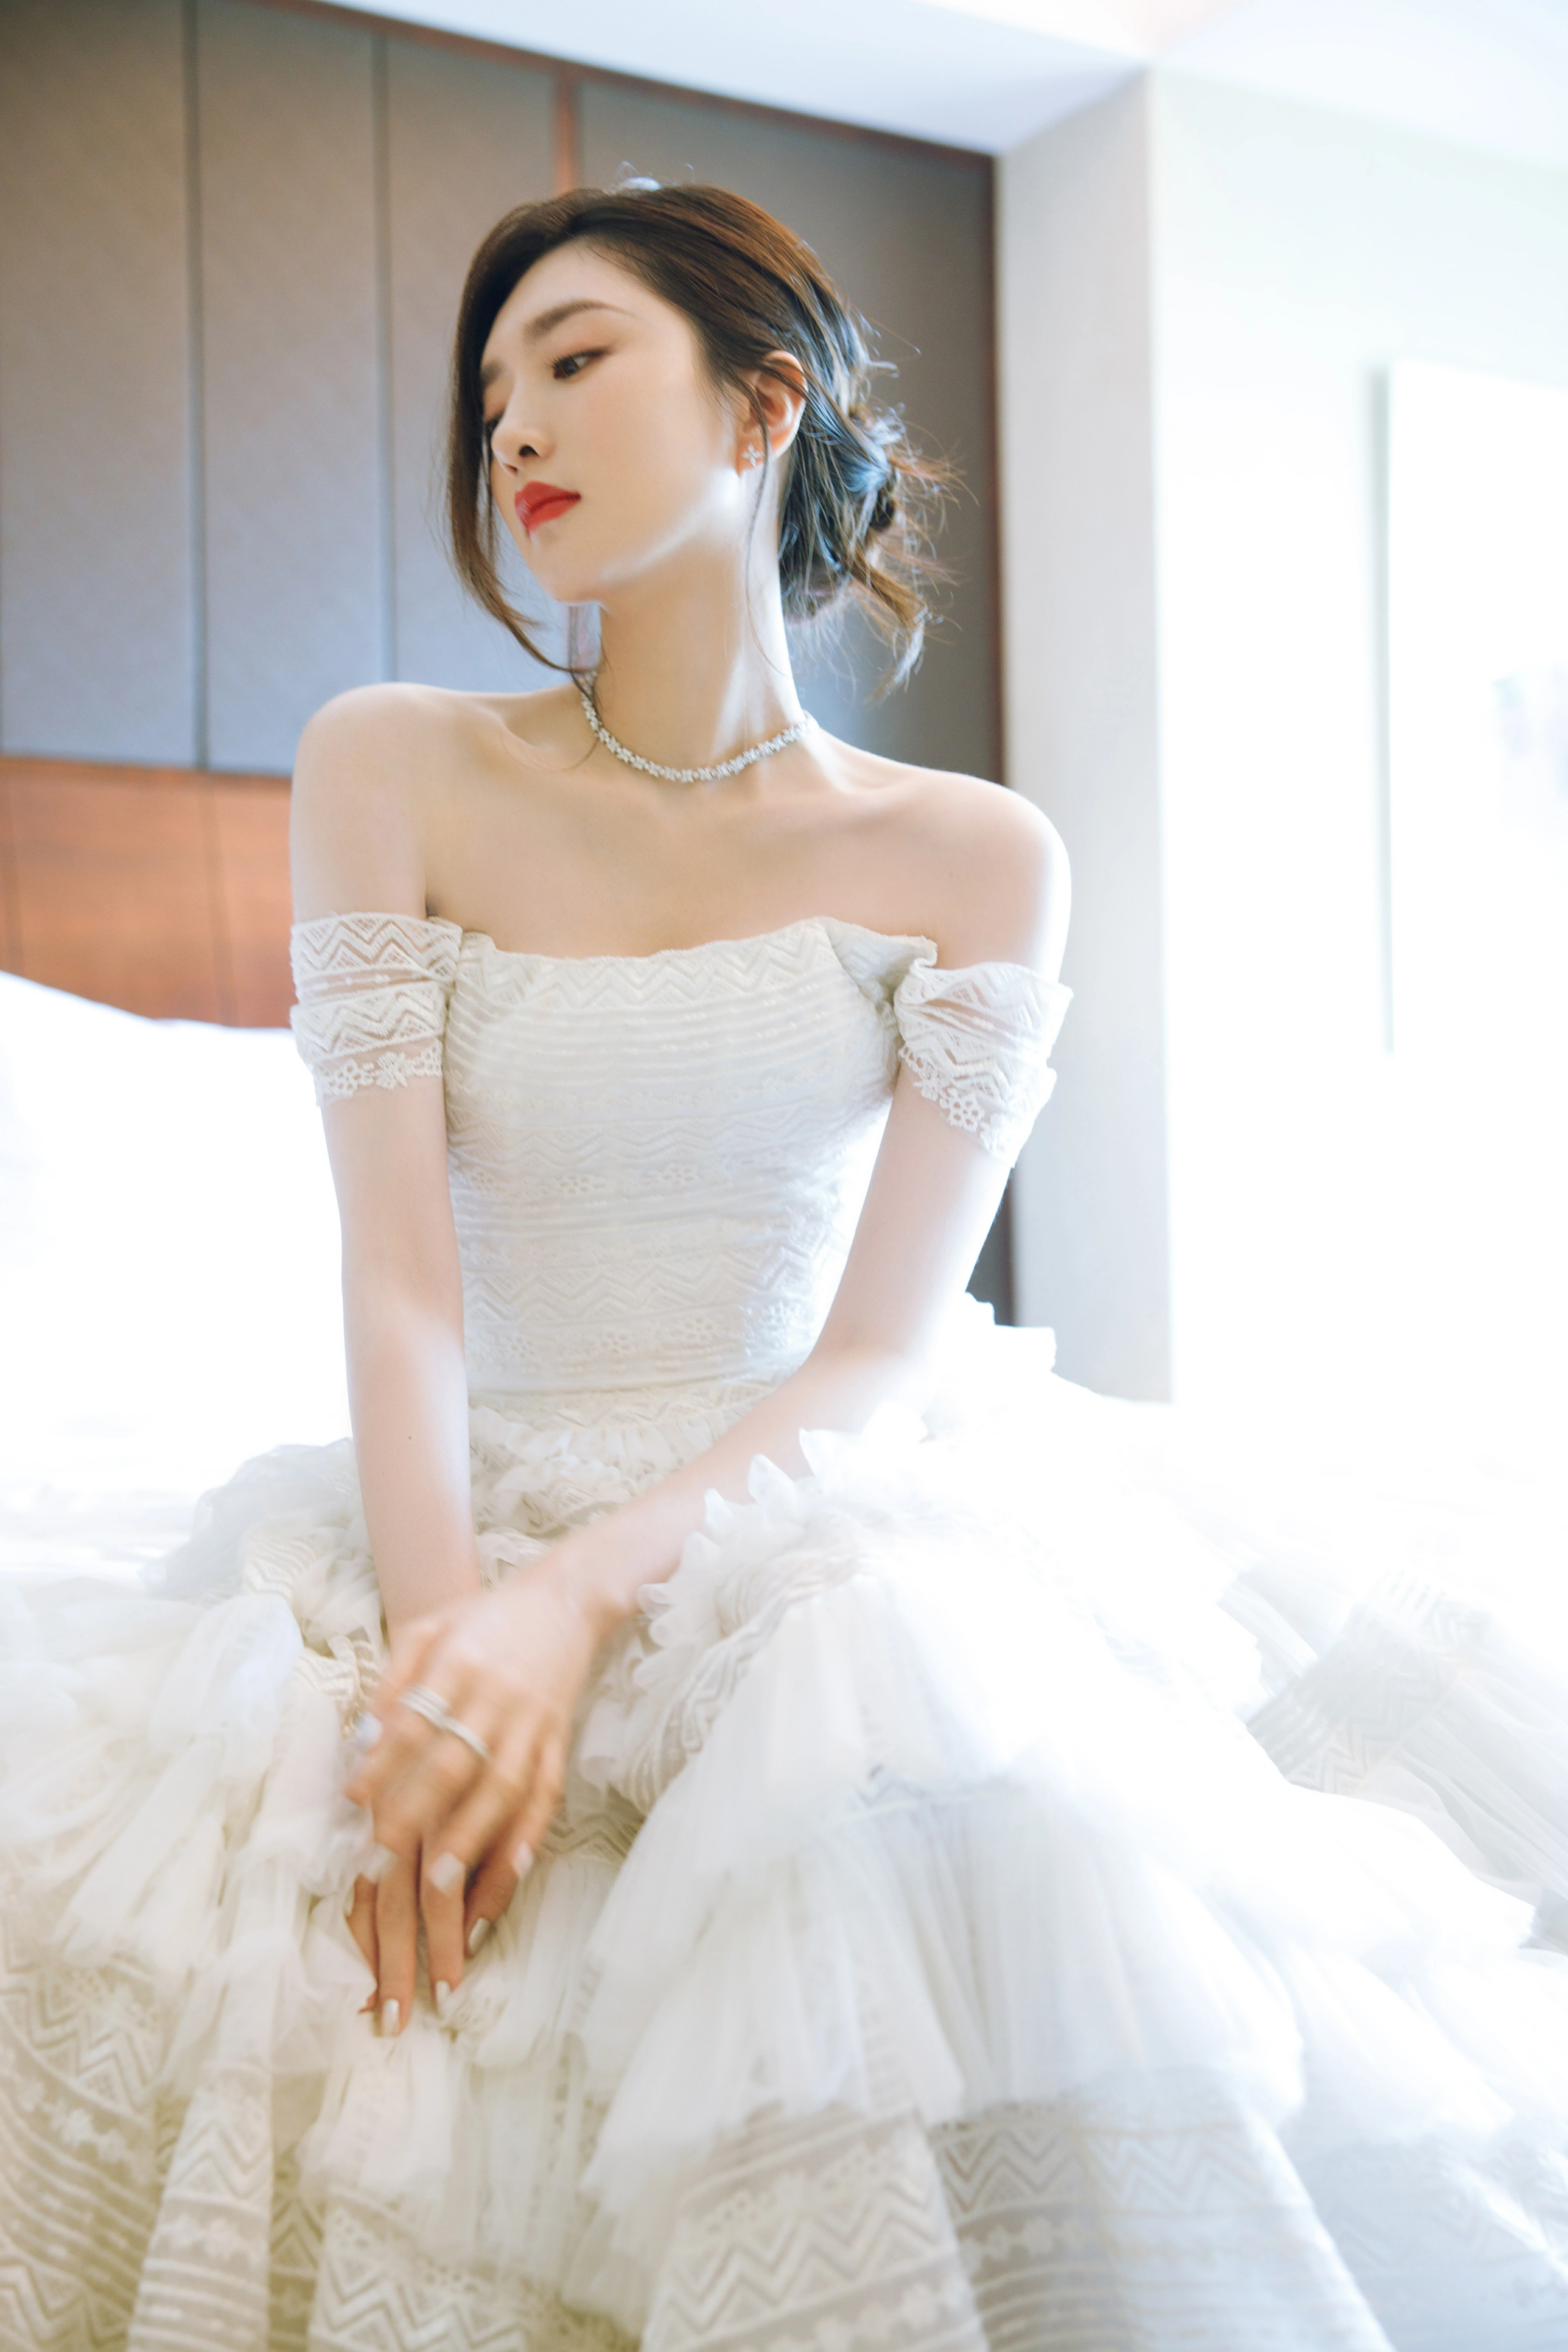 江疏影穿纯白蛋糕裙温婉优雅 自侃戴上头纱就可以结婚了,